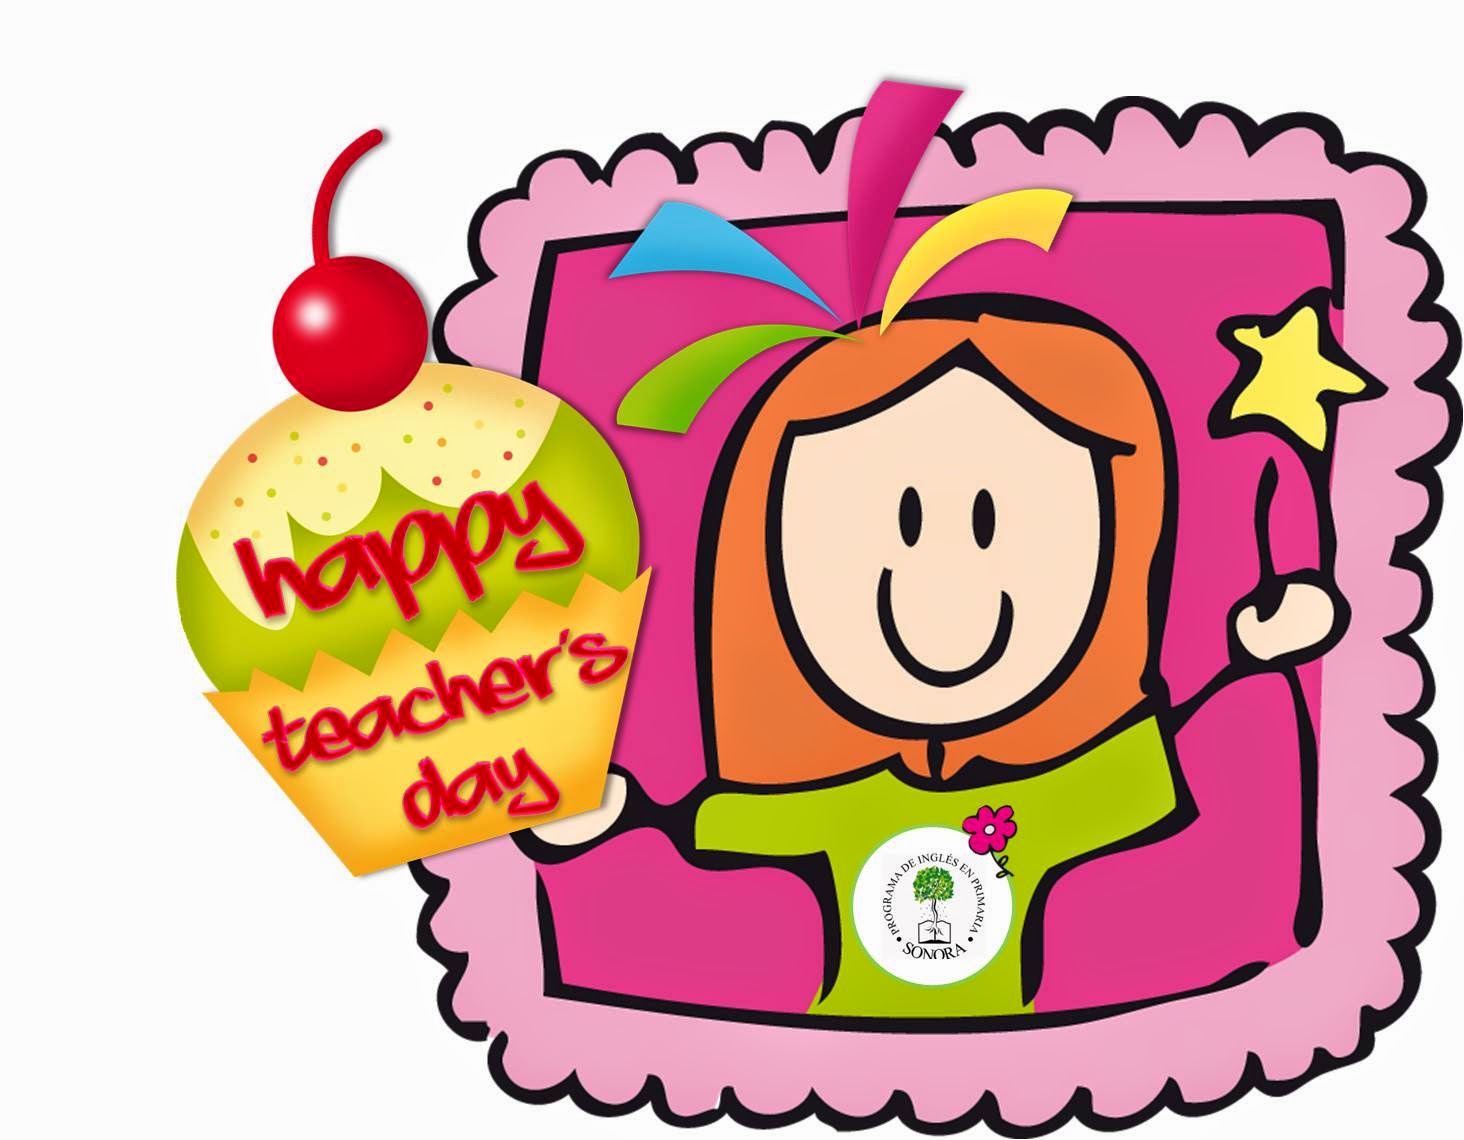 HAPPY TEACHERS DAY!